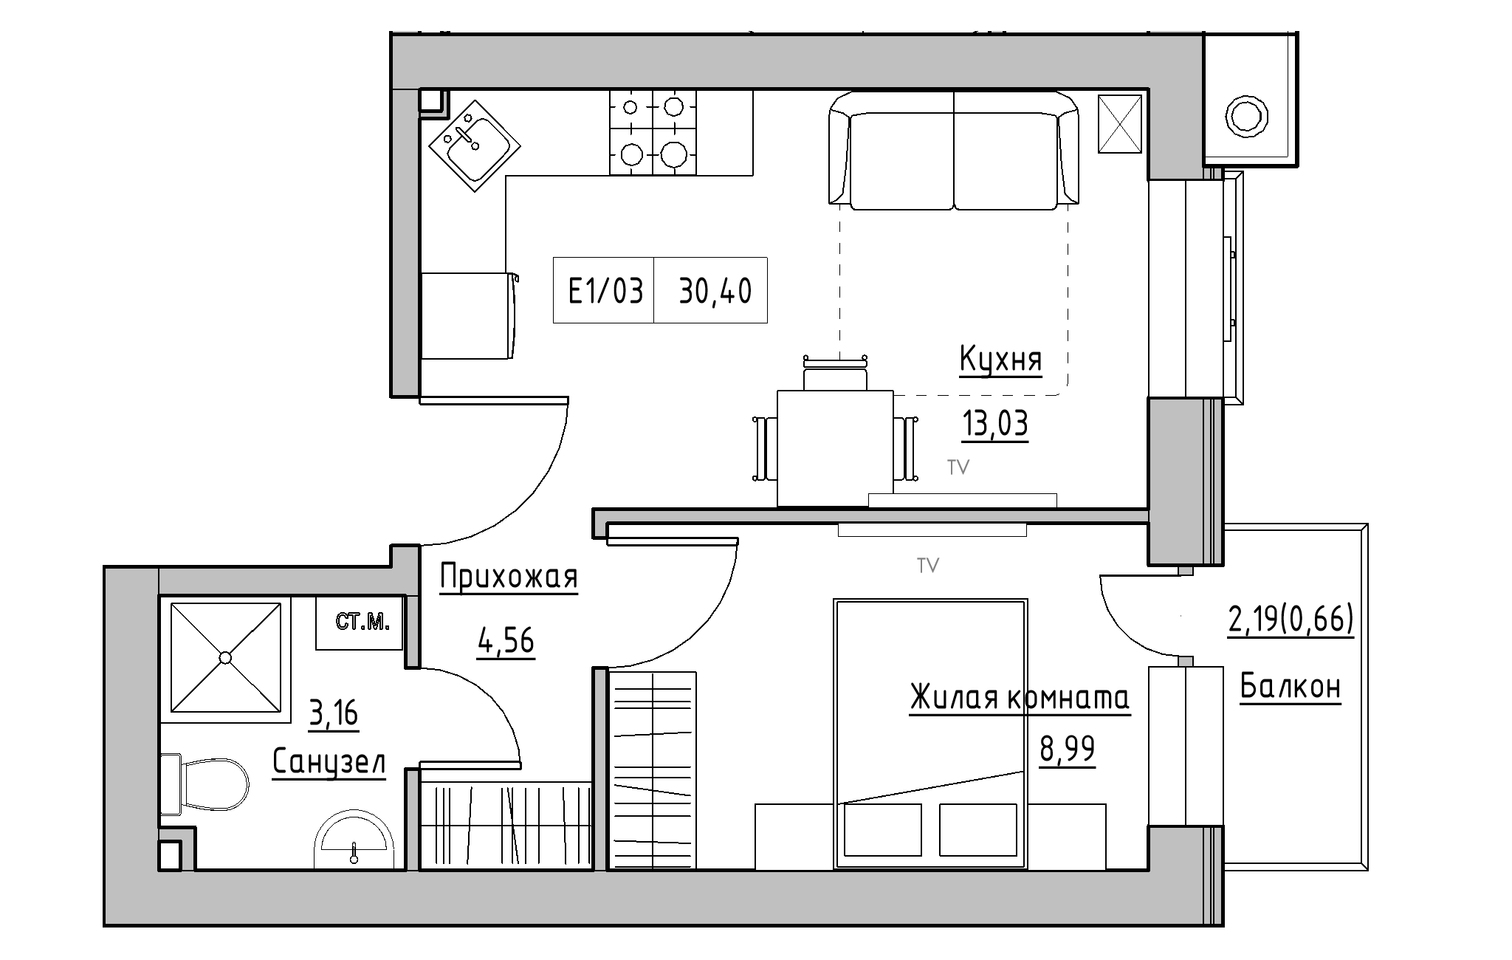 Планування 1-к квартира площею 30.4м2, KS-013-02/0002.